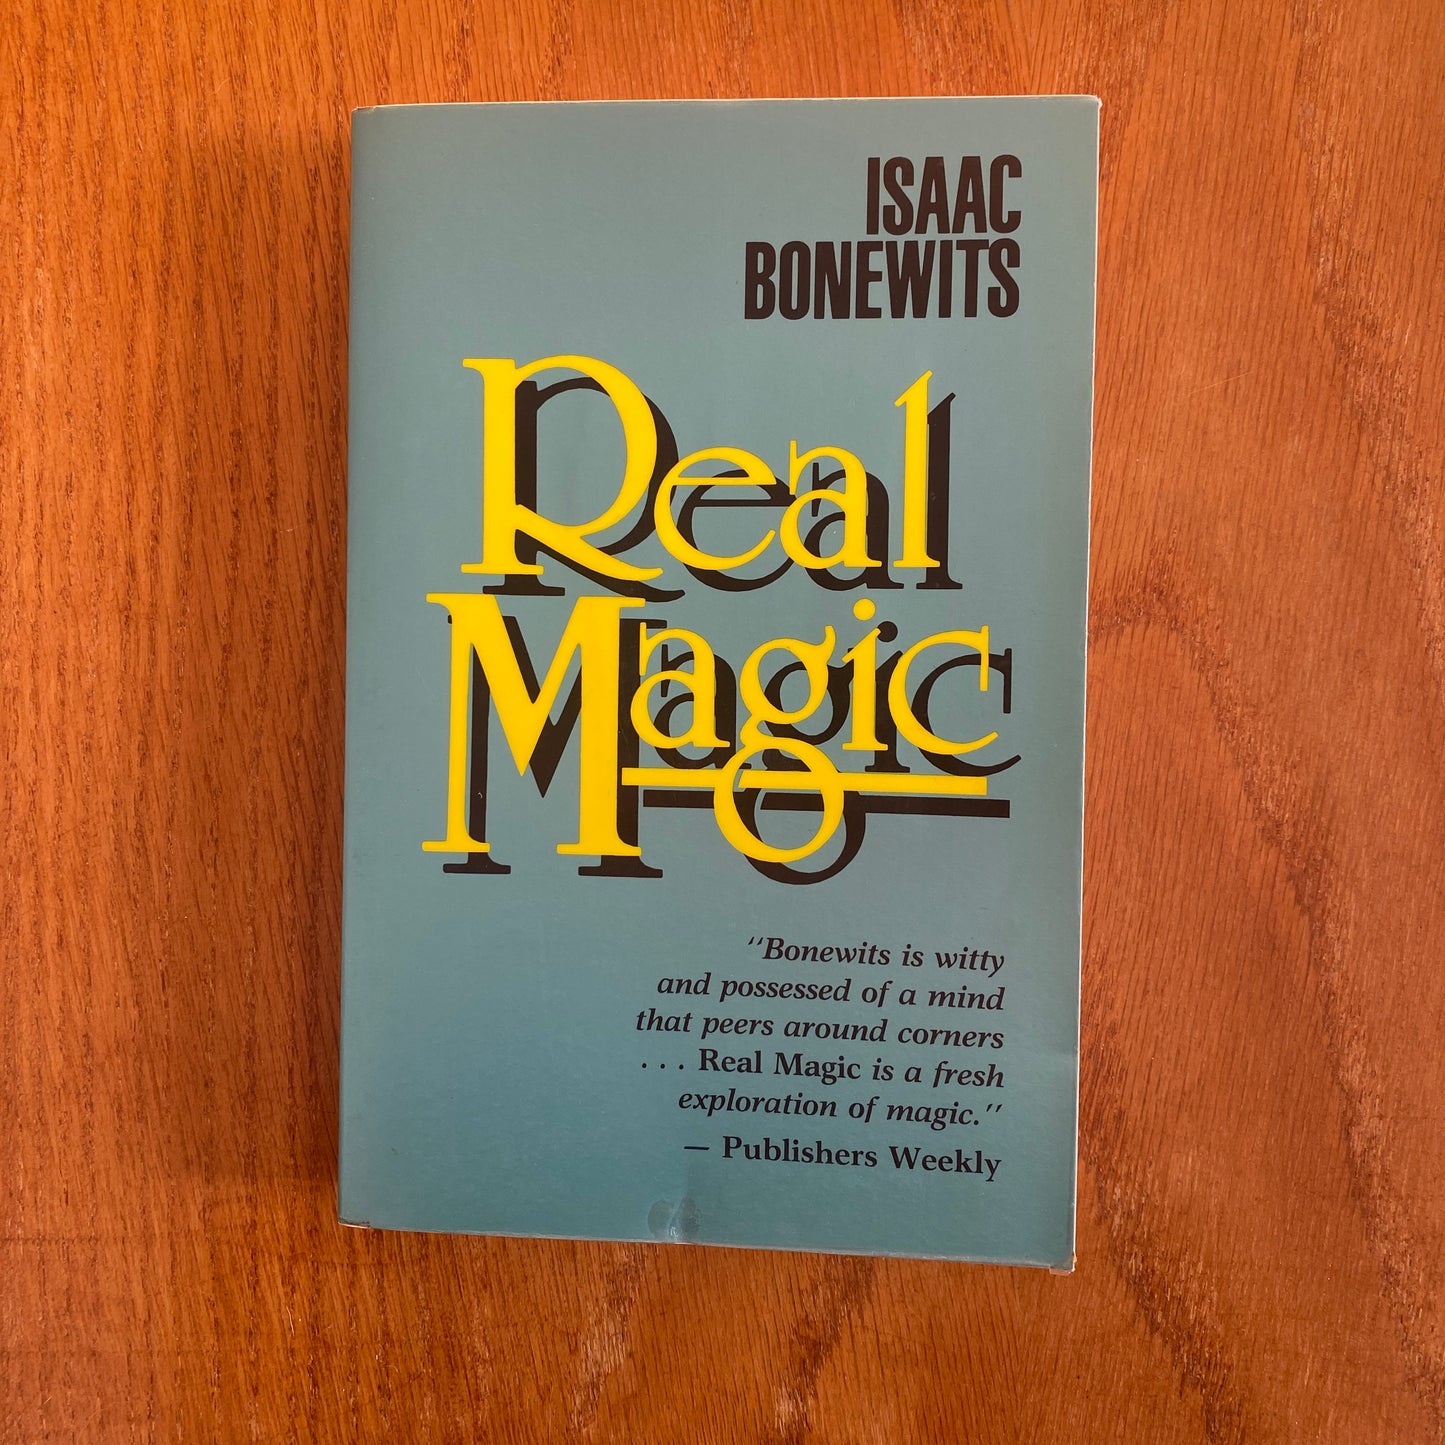 Real Magic - Isaac Bonewits